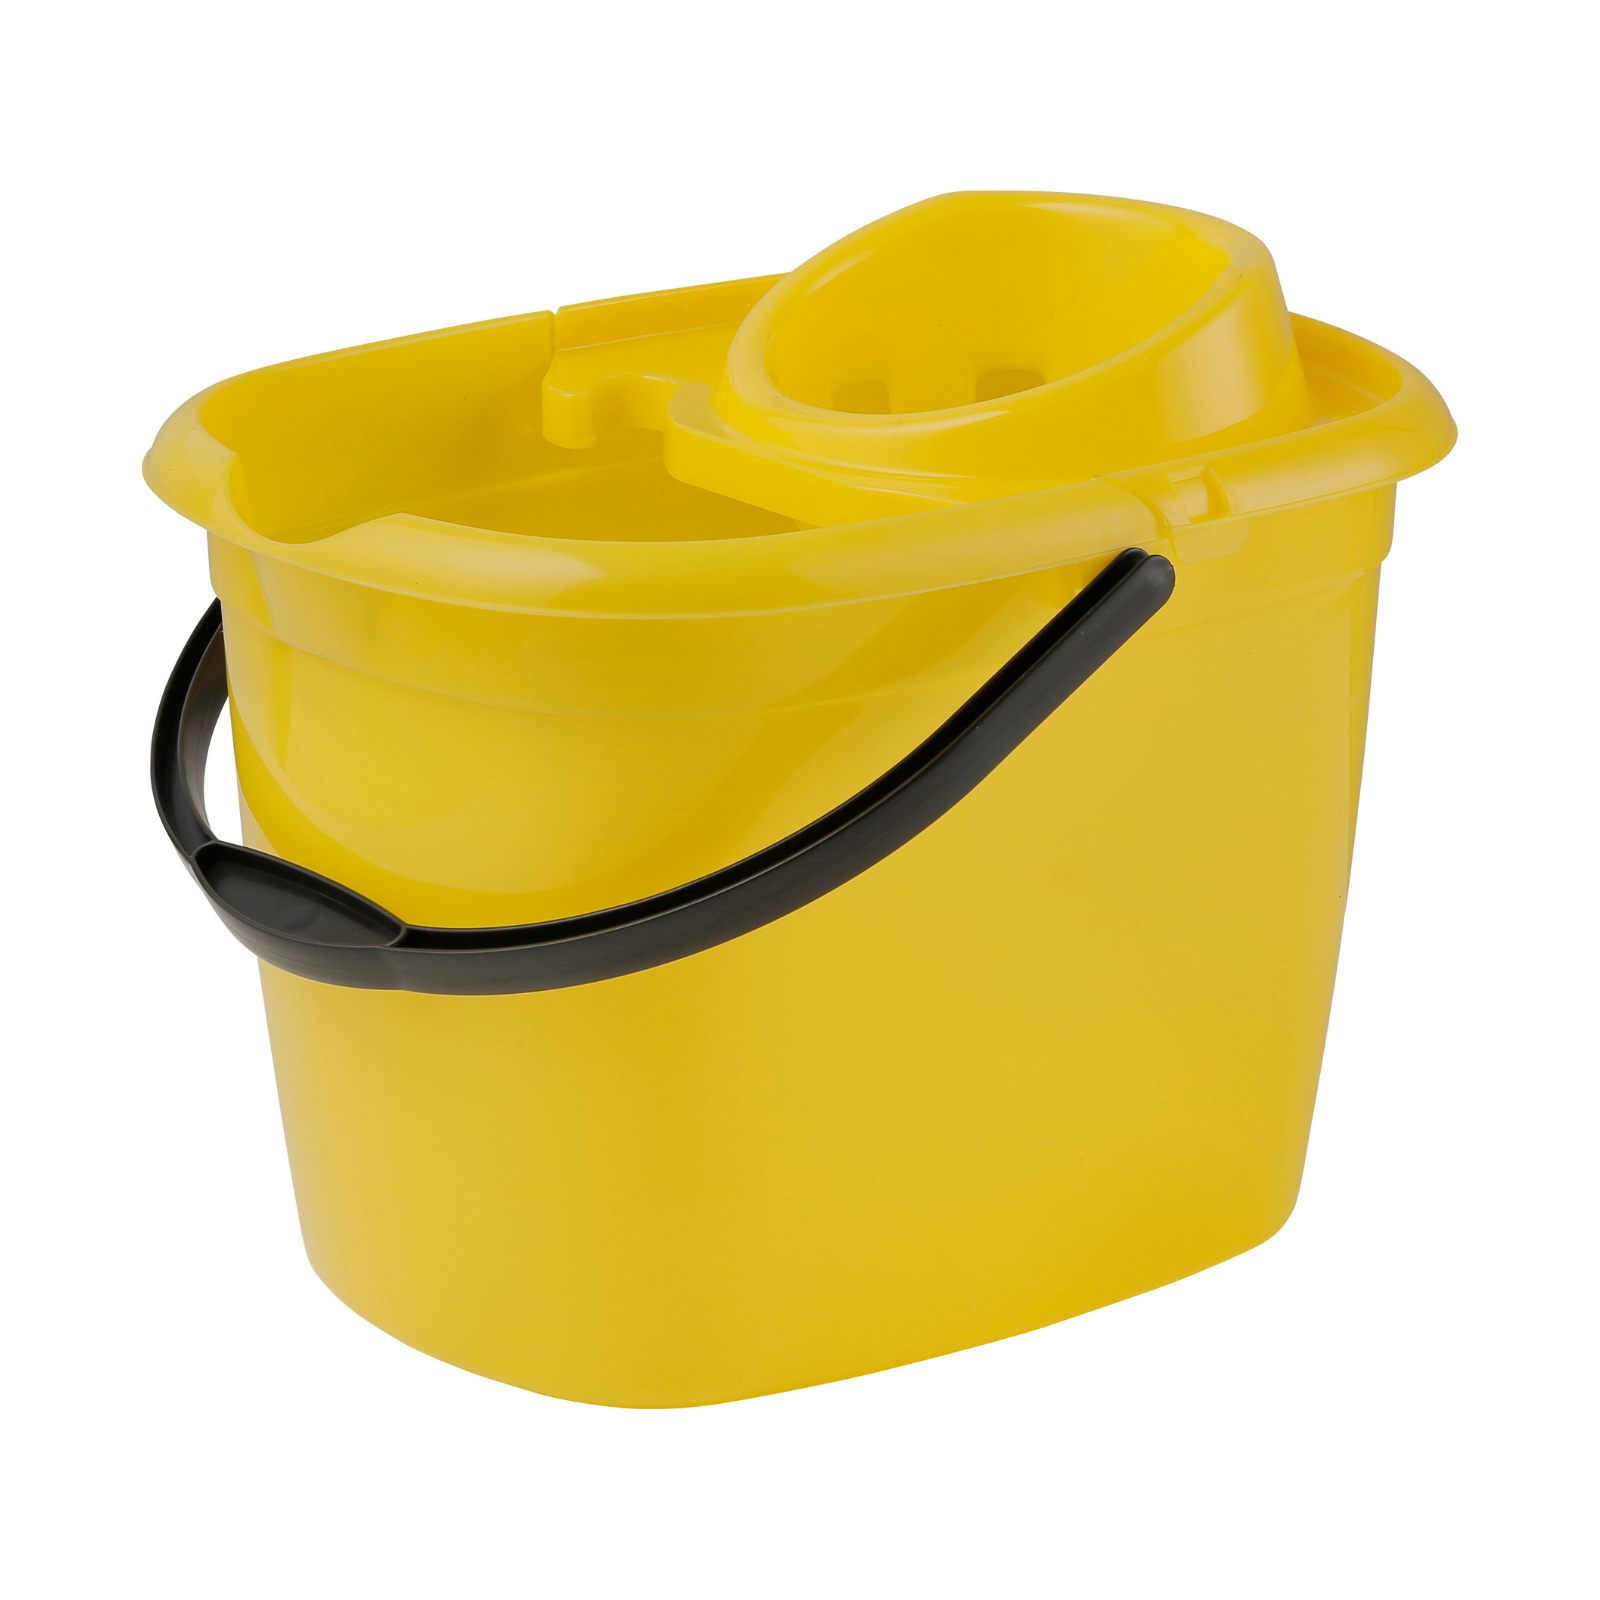 12 Ltr Standard Mop Bucket - Yellow